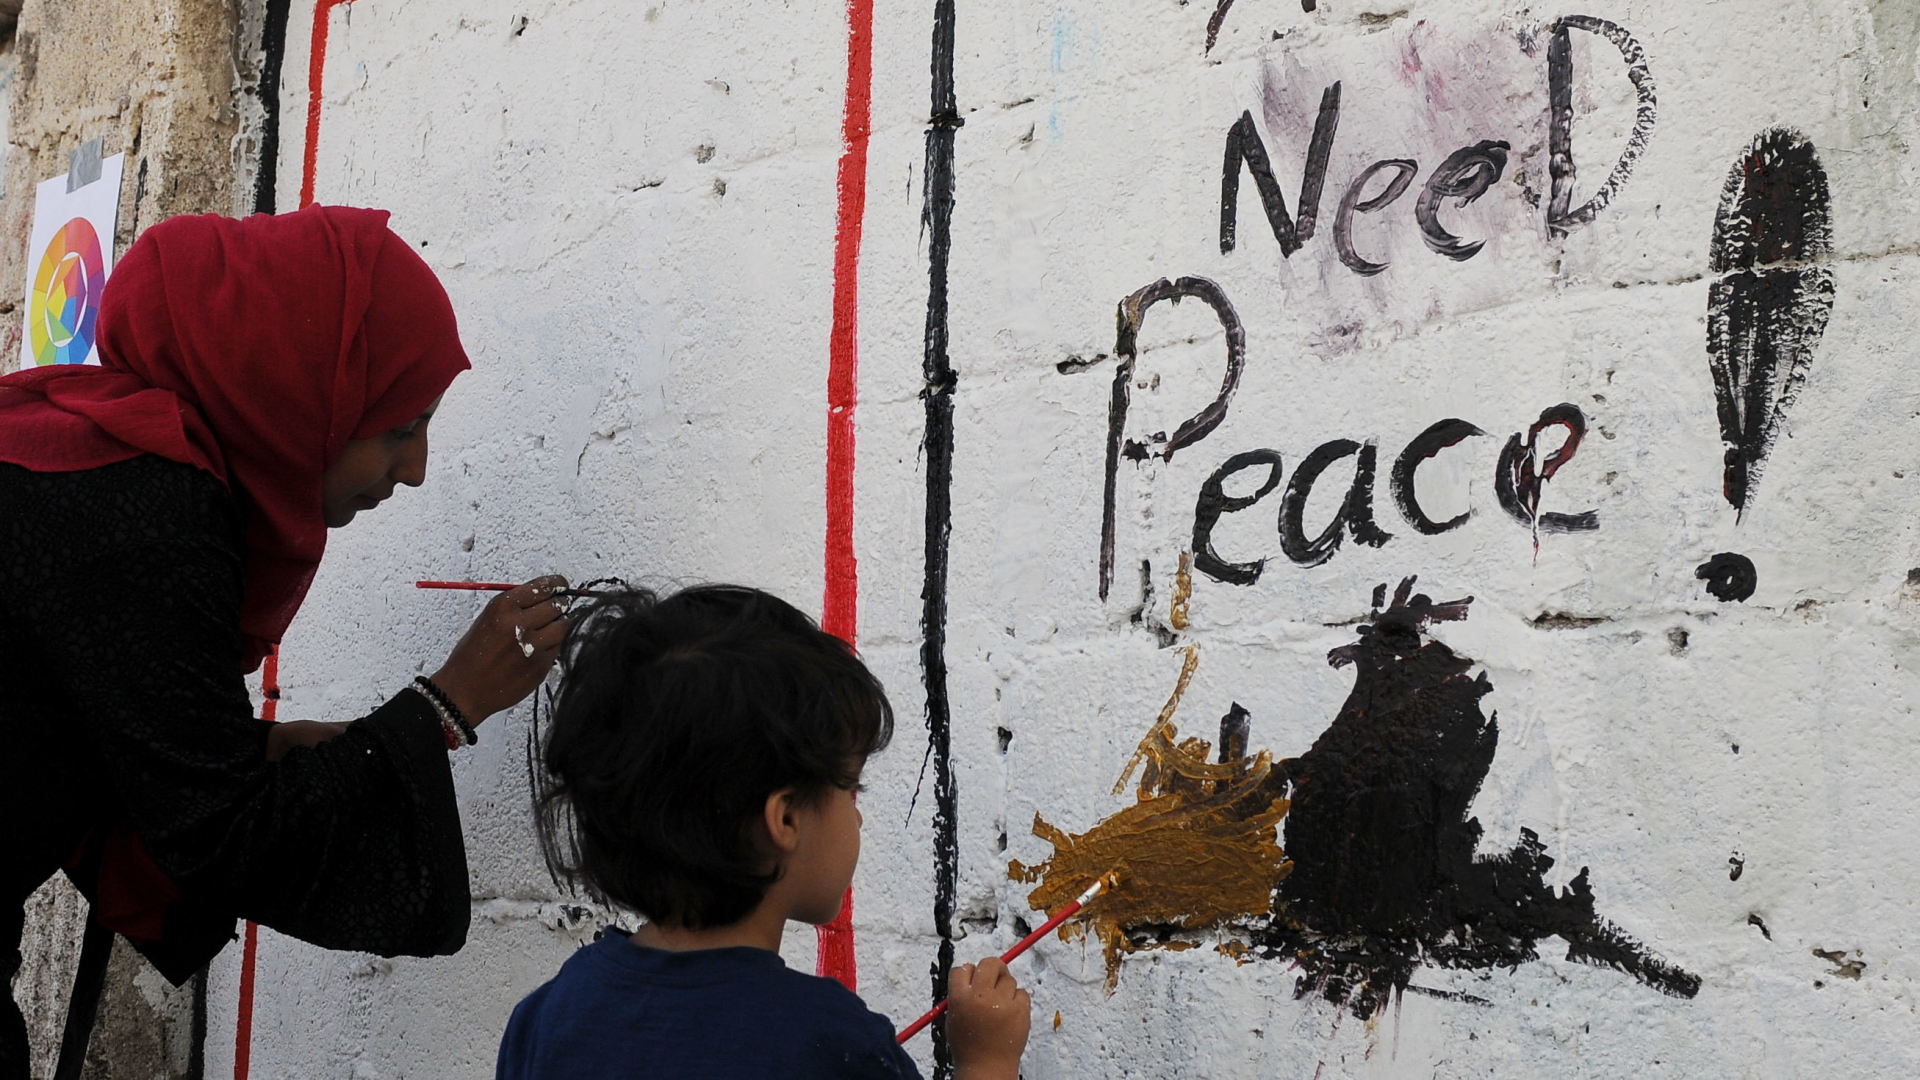 Jemen: Eine Frau und ein Kind malen während einer Kunstaktion Gaffiti an eine Wand | Bildquelle: dpa